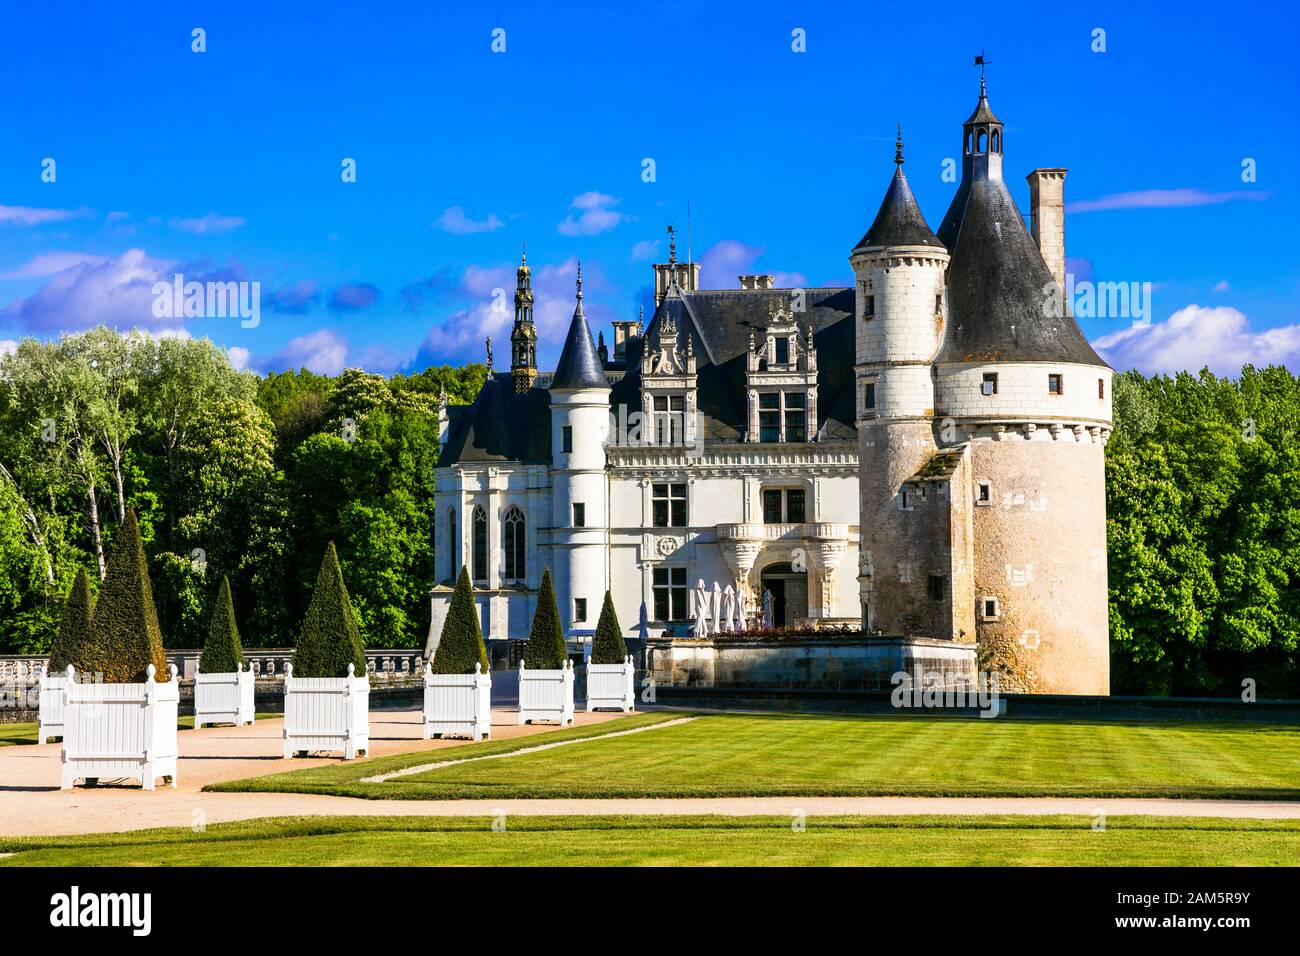 Impressionnant château de Chenonceau, vallée de la Loire, France. Banque D'Images